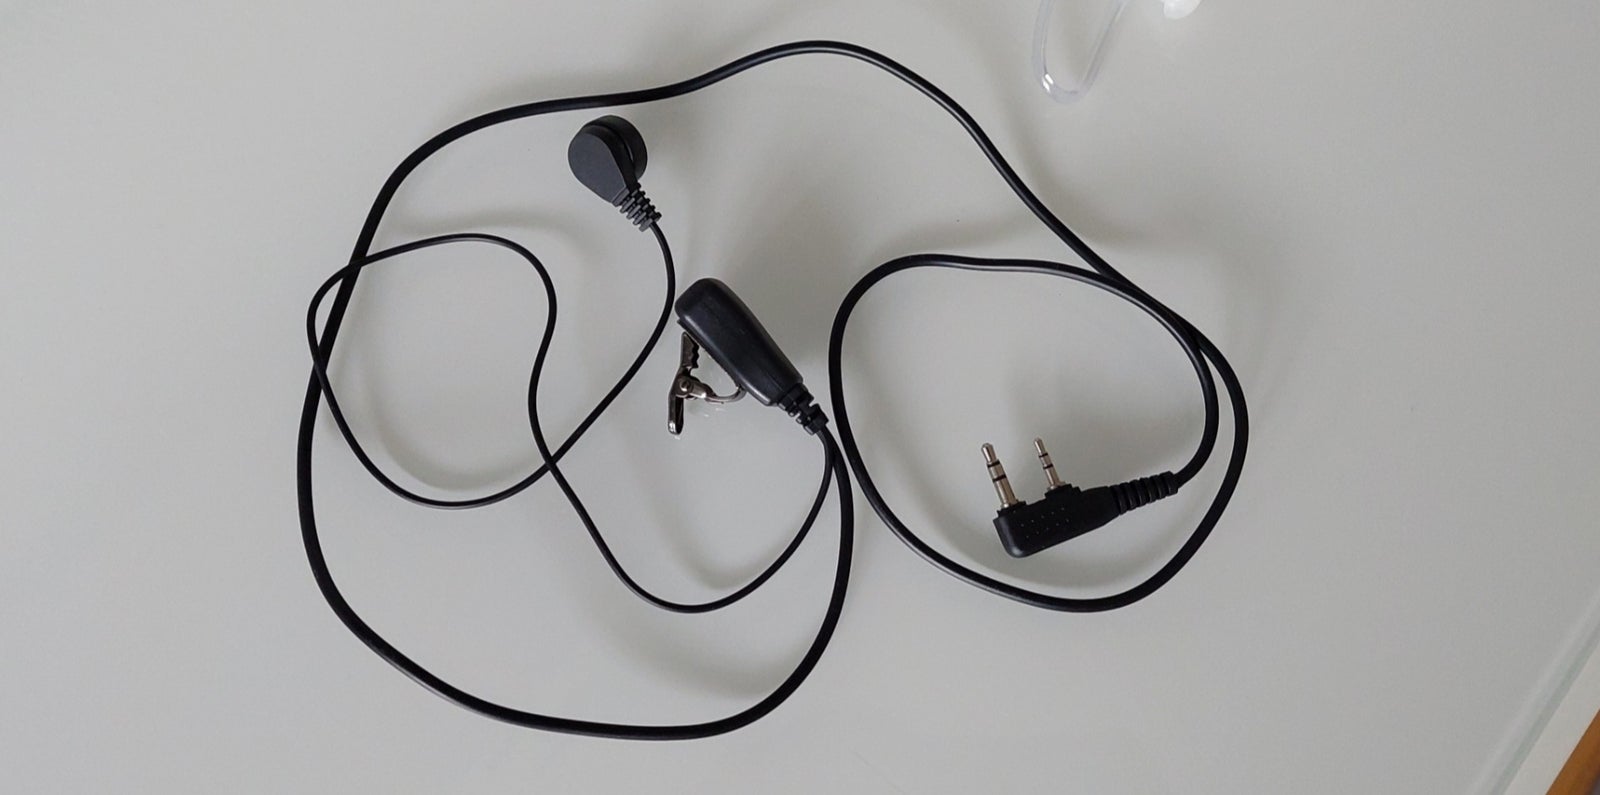 Headset til walkie talkie passer bl.a. til Baofeng,